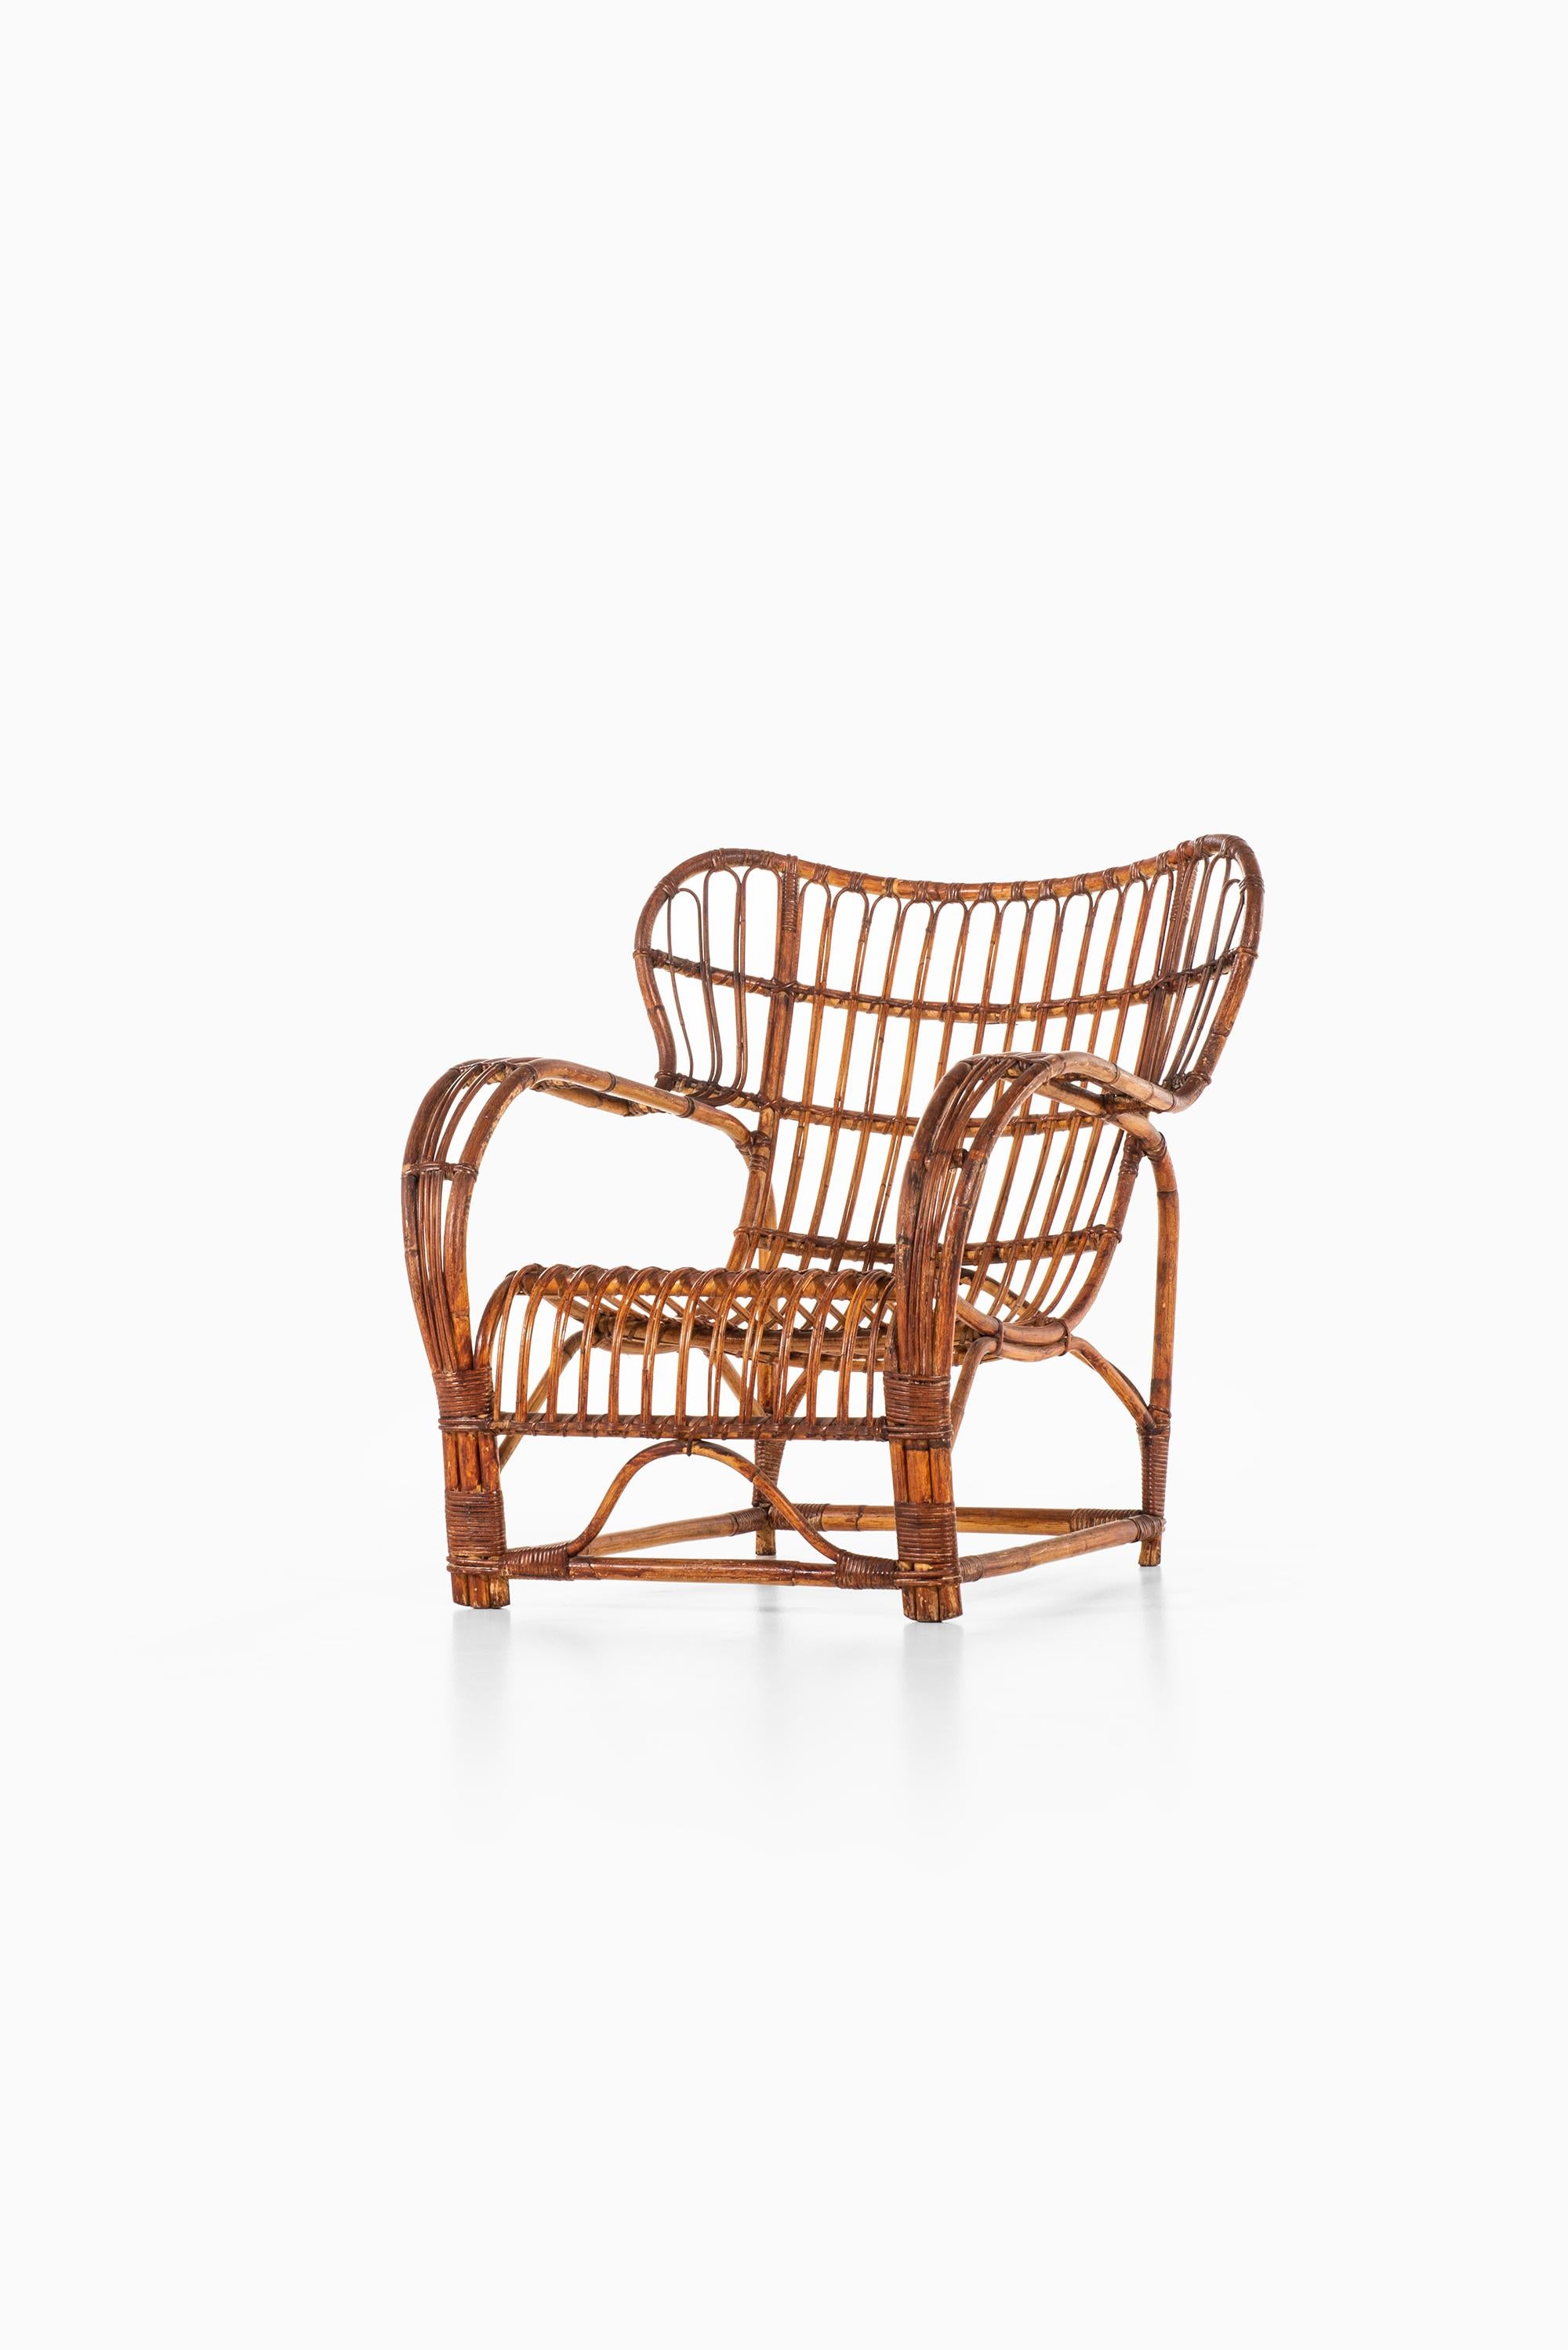 Scandinavian Modern Viggo Boesen Easy Chair Produced by E.V.A. Nissen & Co in Denmark